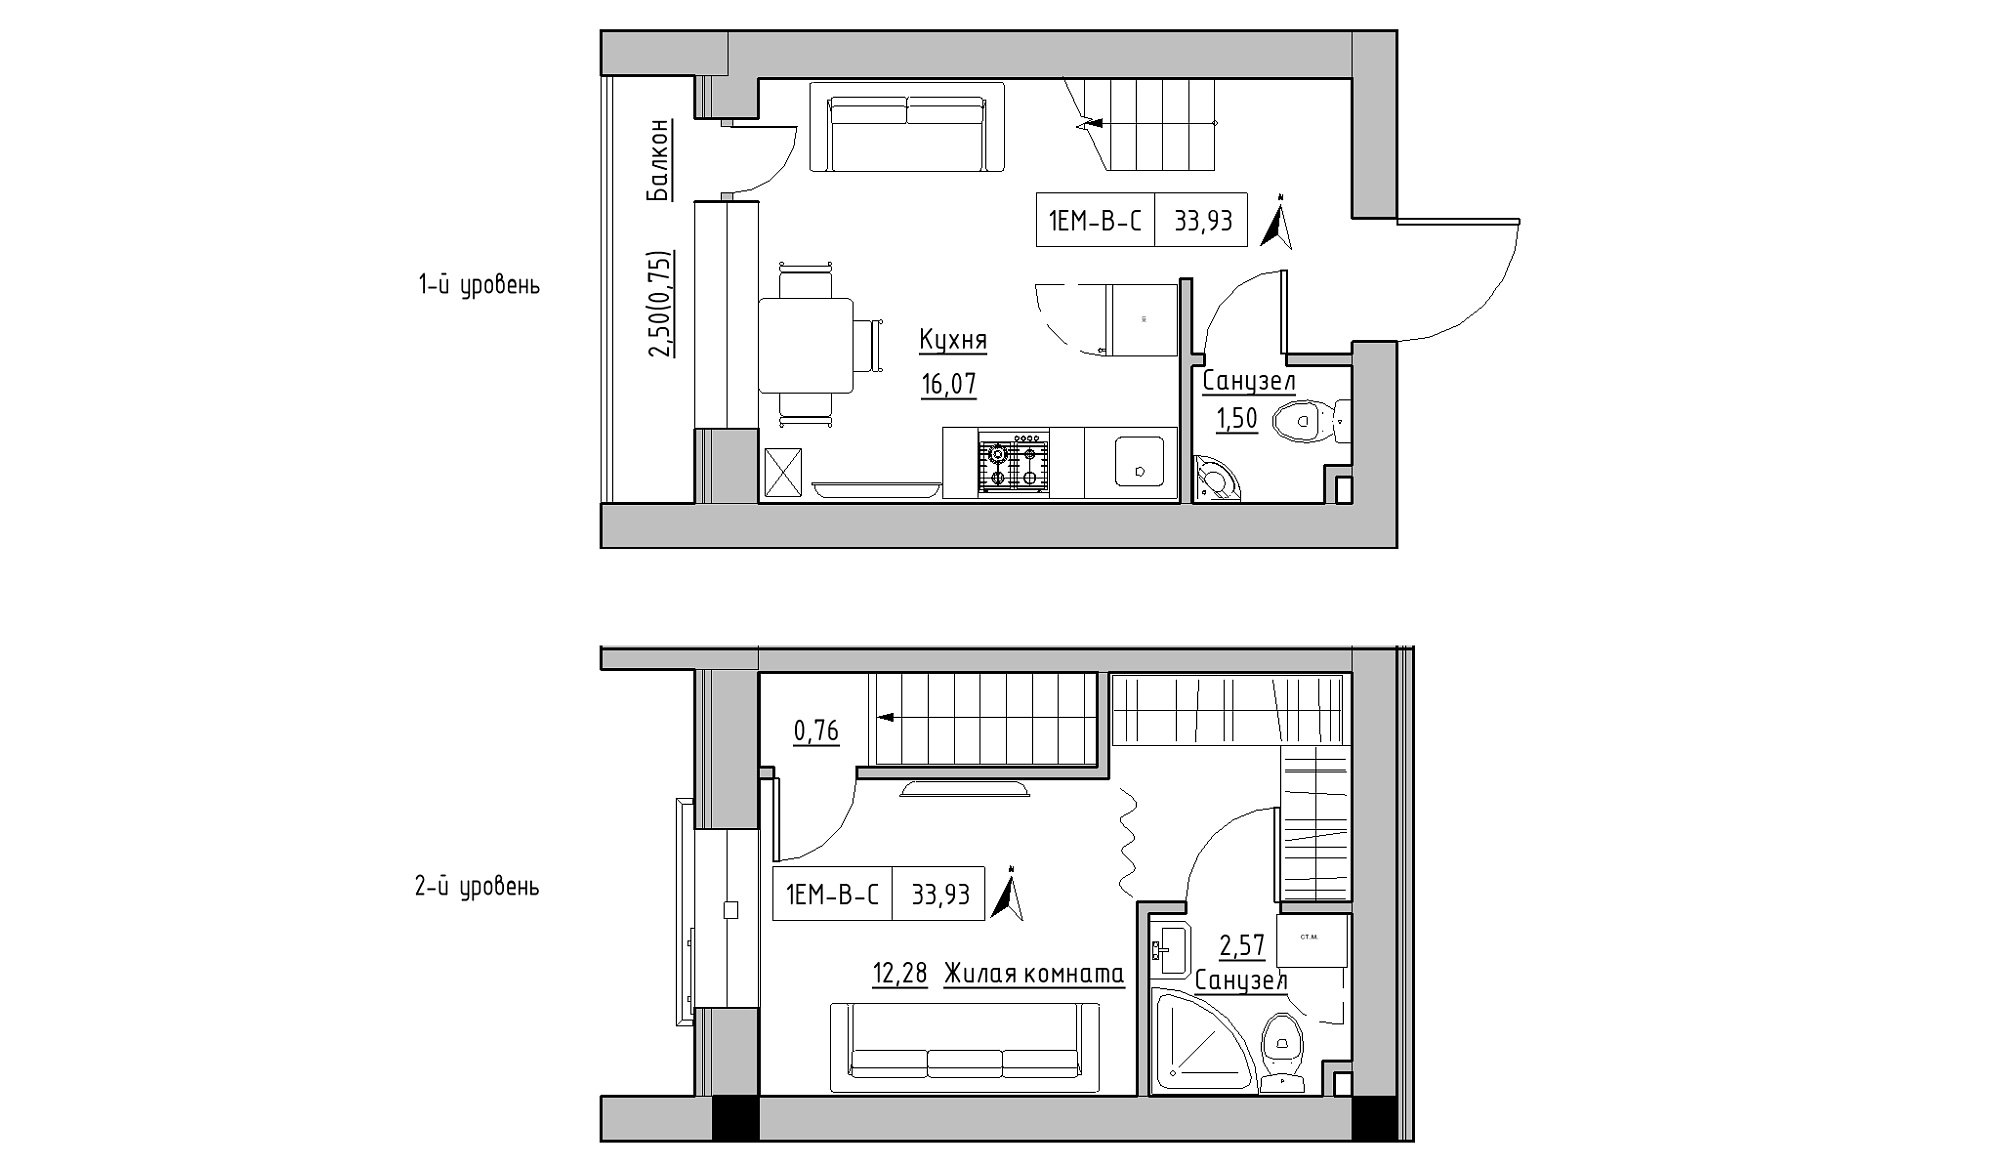 Planning 2-lvl flats area 33.93m2, KS-016-05/0012.